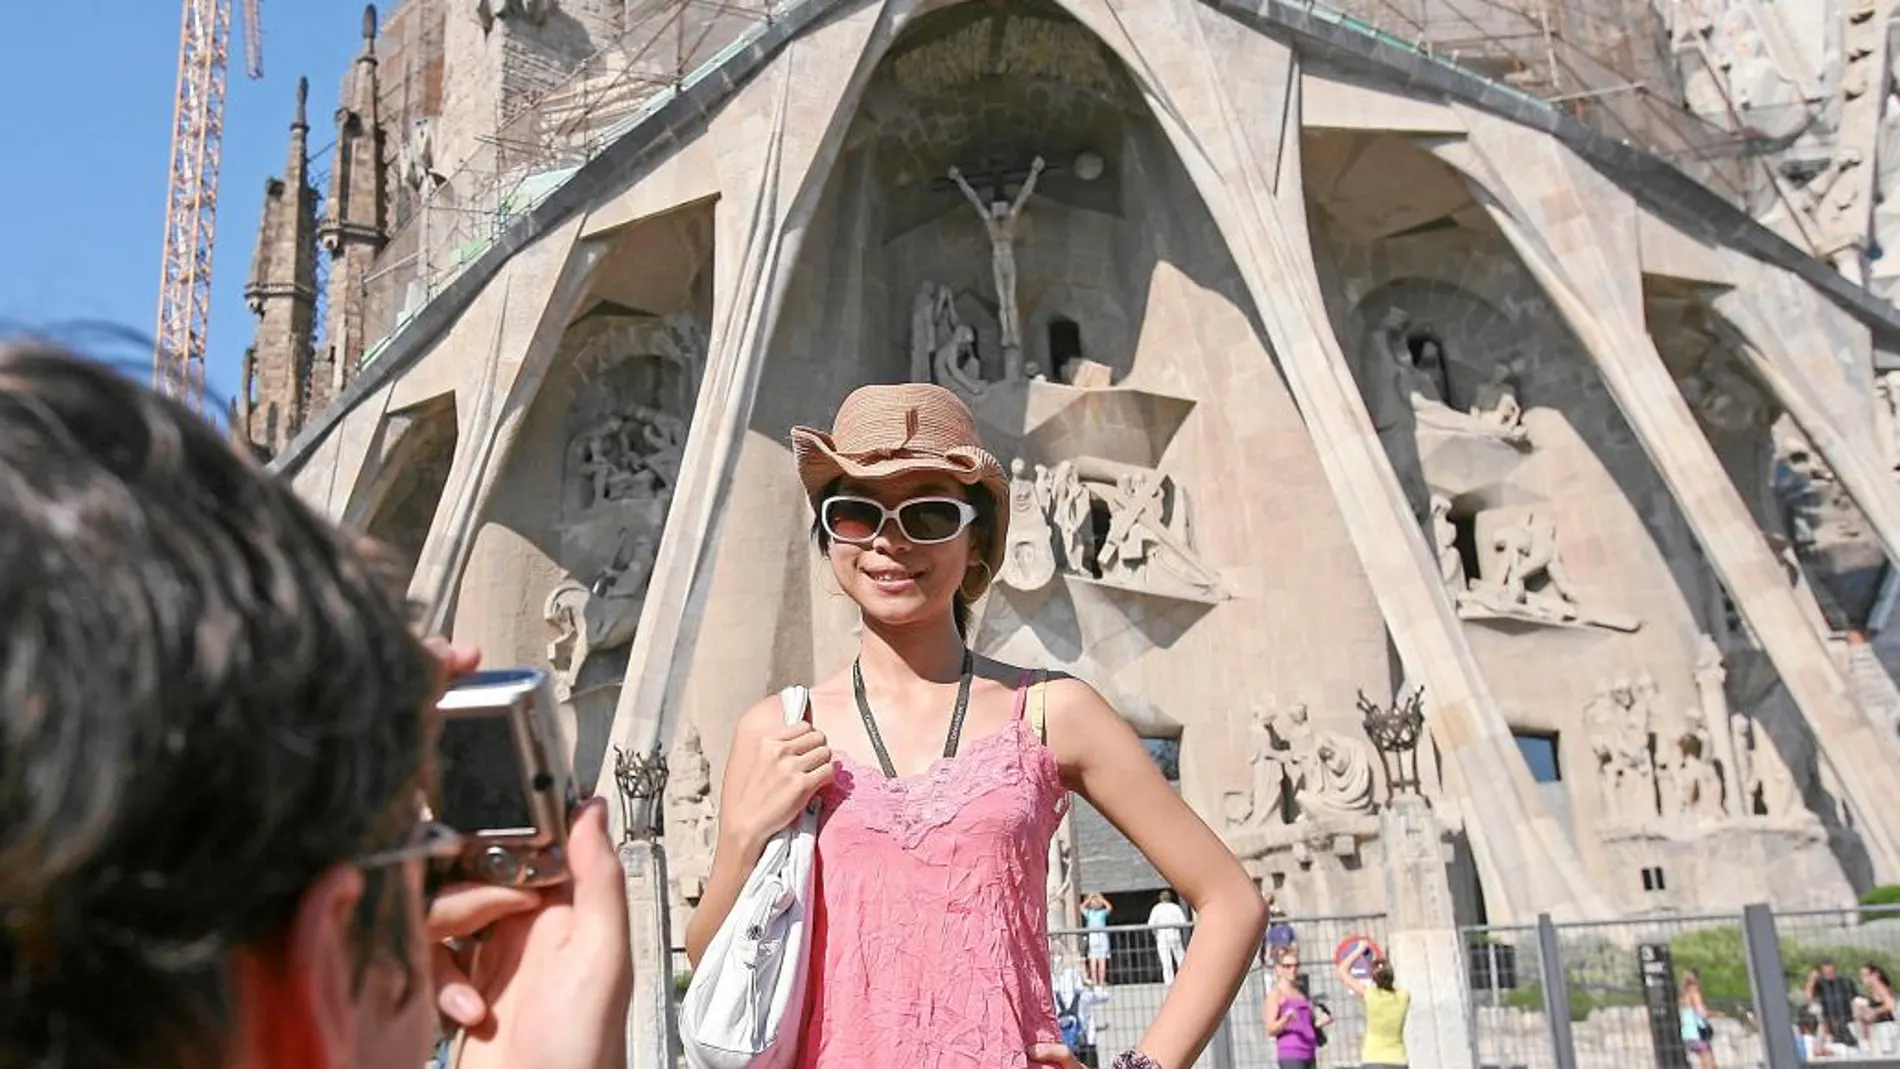 Turistas en Barcelona se hacen fotos frente a la Sagrada Familia